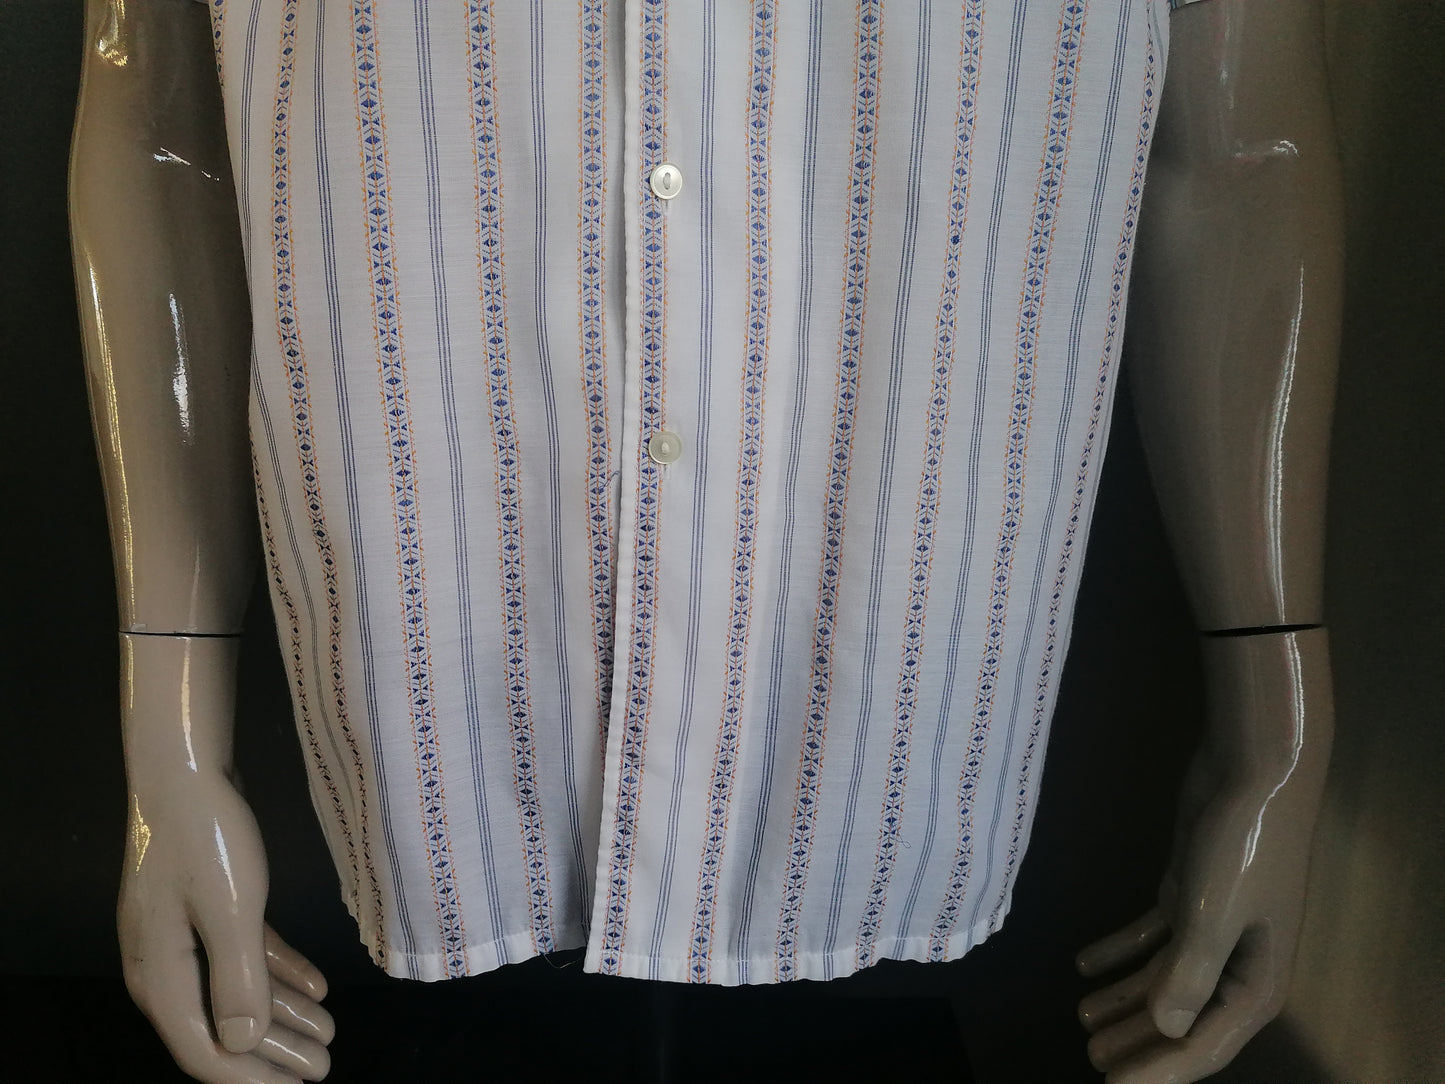 Vintage 70's overhemd korte mouw met puntkraag. Beige Blauw Geel gestreept. Maat XL.